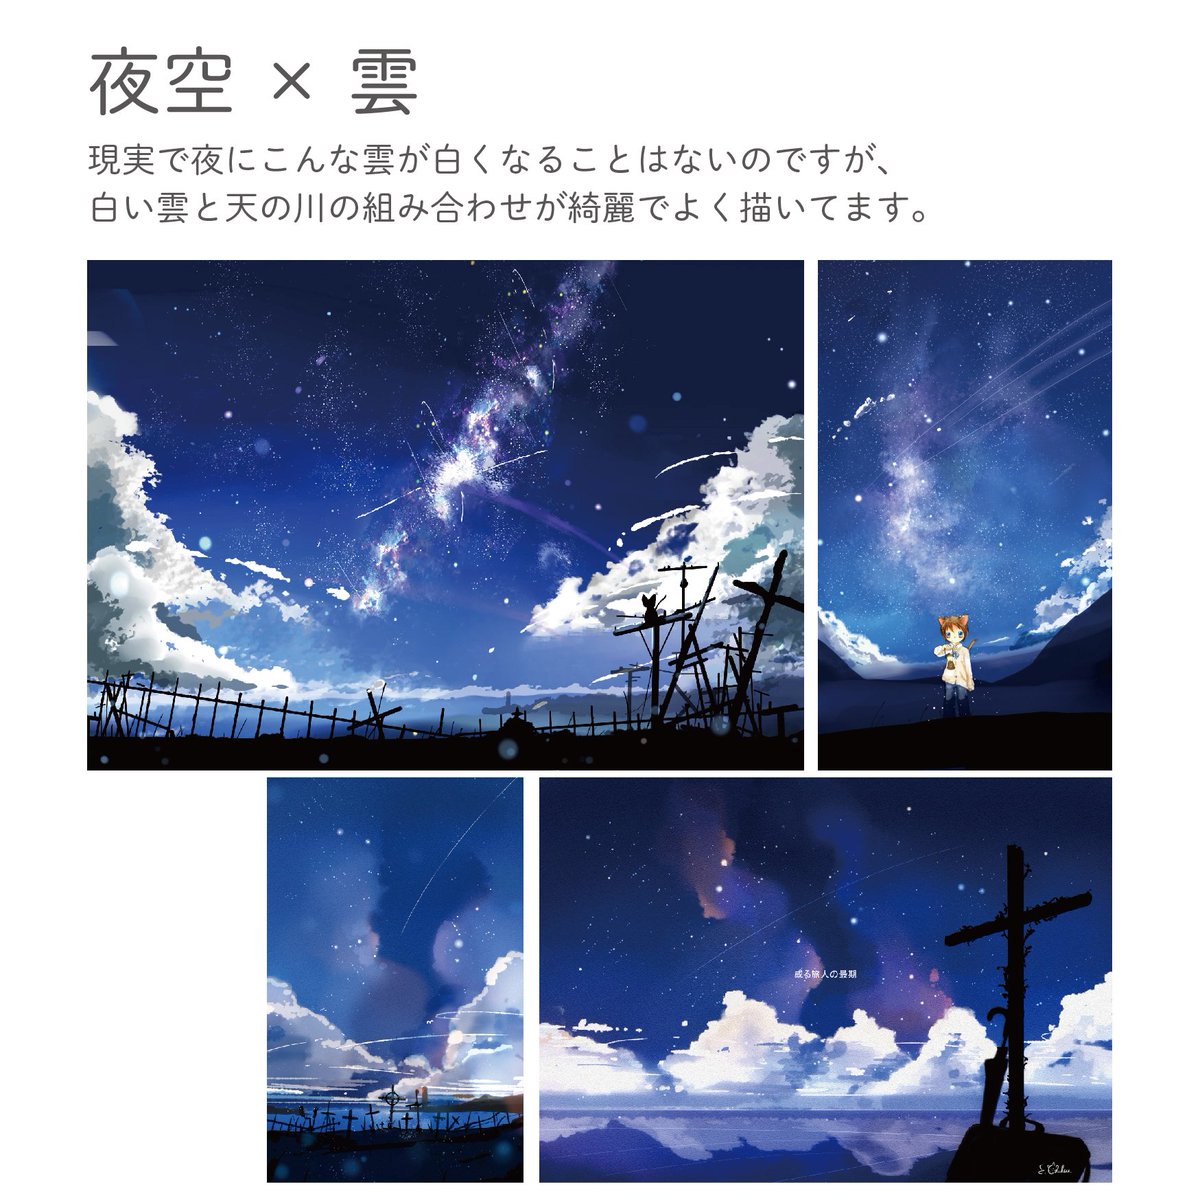 桜田千尋 10月1日レシピ本発売 夕日に引き続き自分の夜空のイラストを種類わけしてみました 夜空は 夜空 みたいな感じで一緒に何を描くかが楽しいところかなと思ってます